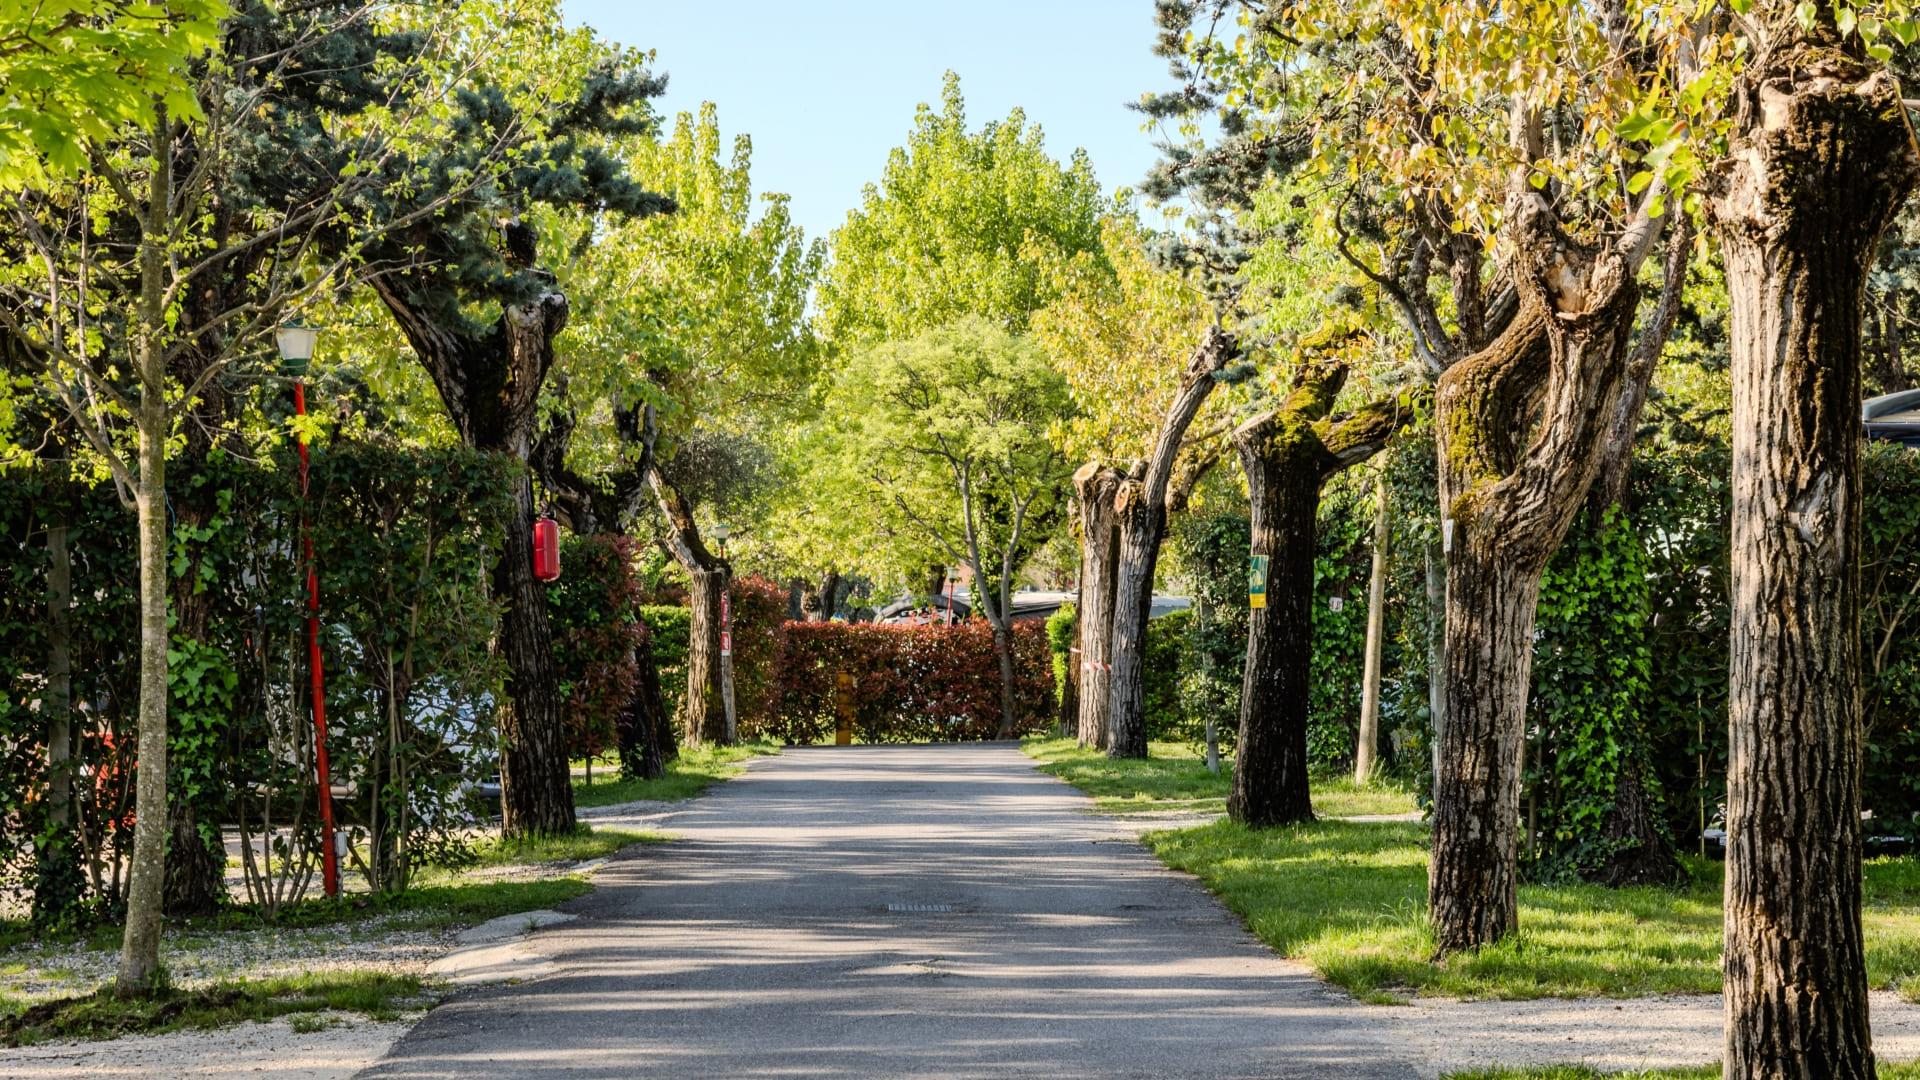 Avenue bordée d'arbres taillés et de buissons verts.